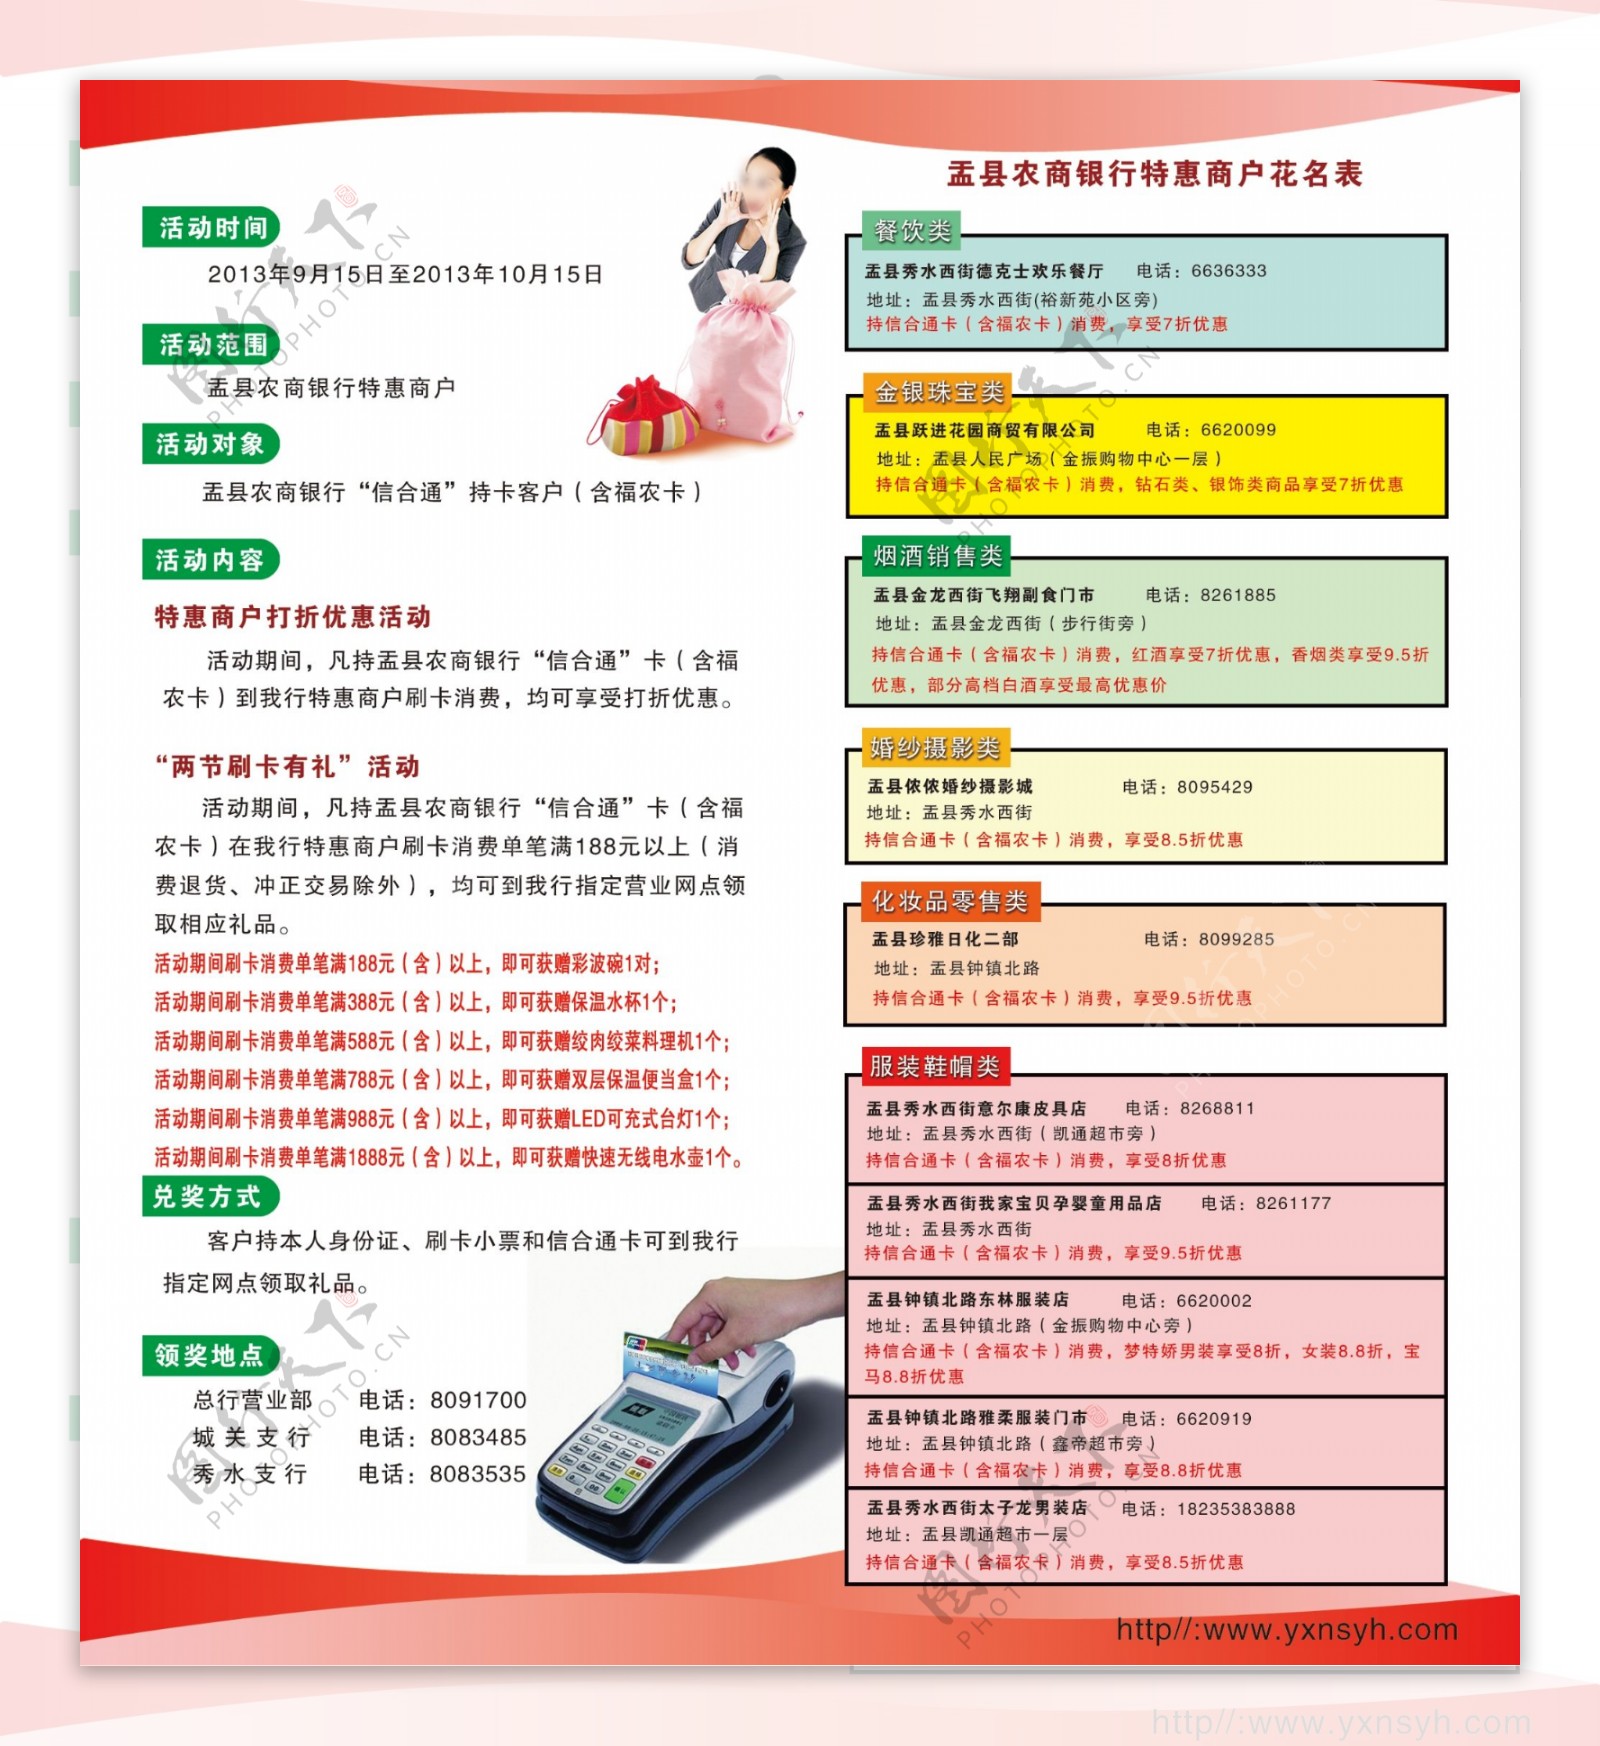 盂县农商银行银行卡宣传单图片